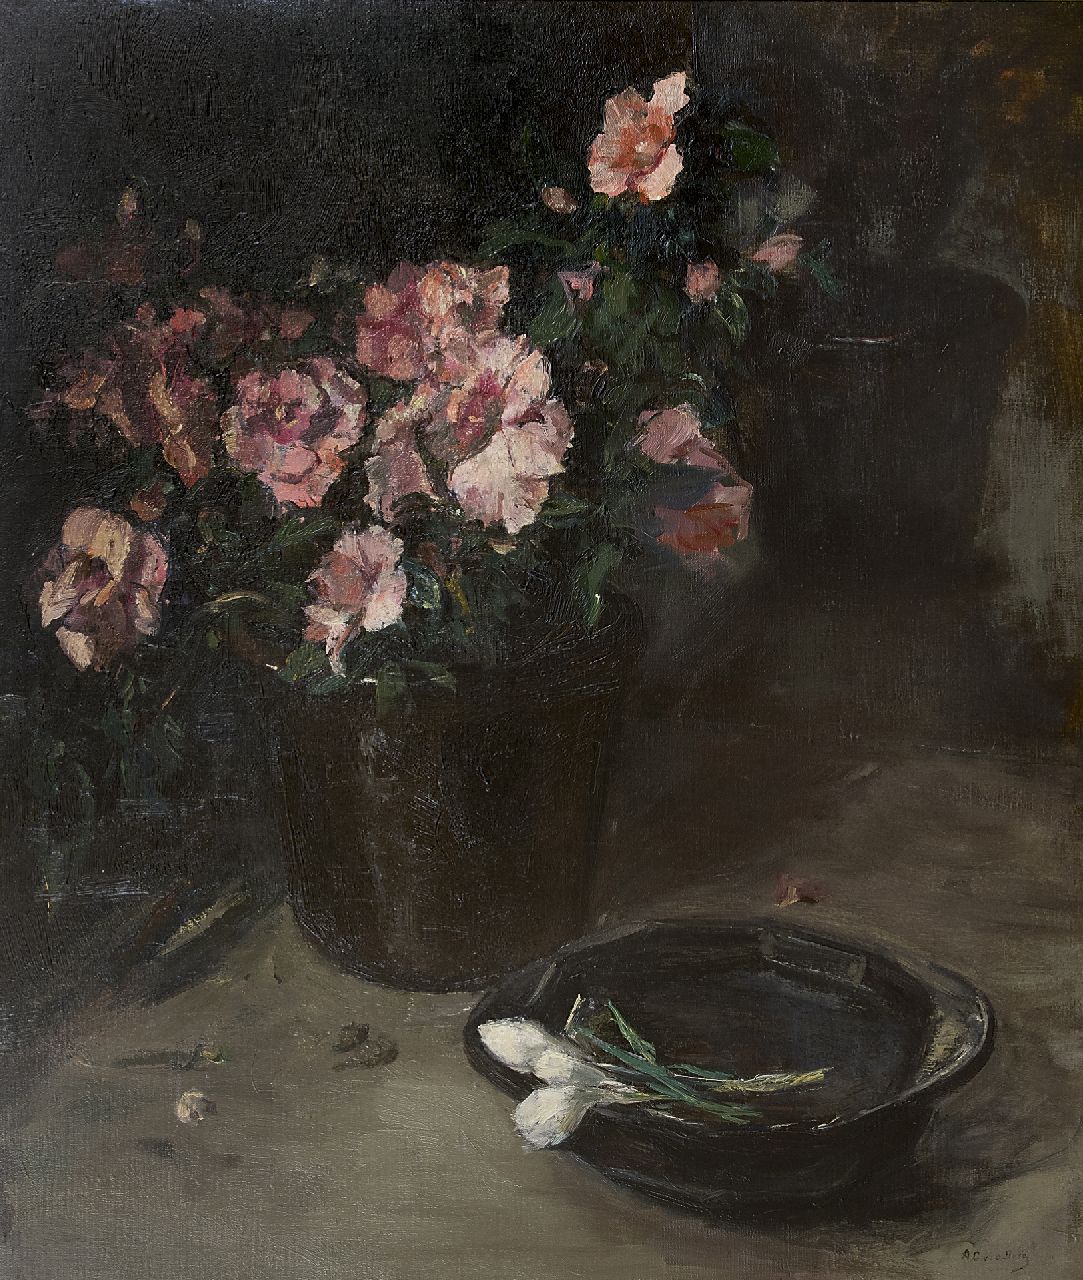 Berg A.C. van den | Anna Carolina 'Ans' van den Berg, Azalea in bloom, oil on canvas 78.0 x 65.3 cm, signed l.r.